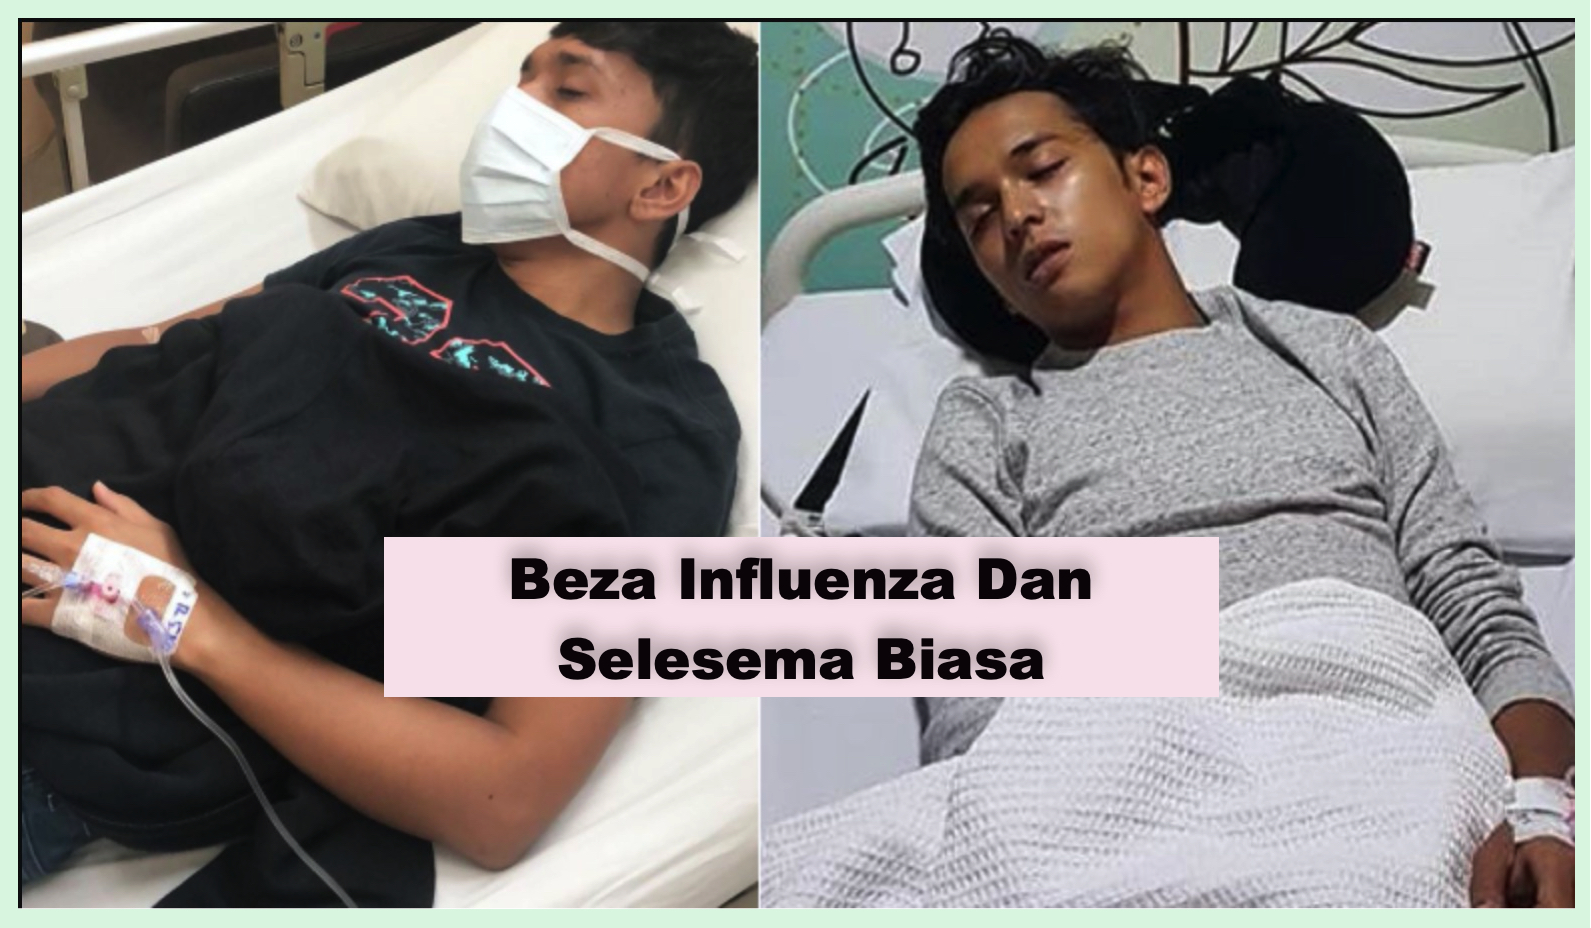 sajagempak.com - Kenali Influenza Dan Bezanya Dengan Demam Selesema Biasa Yang Ramai Tak Tahu